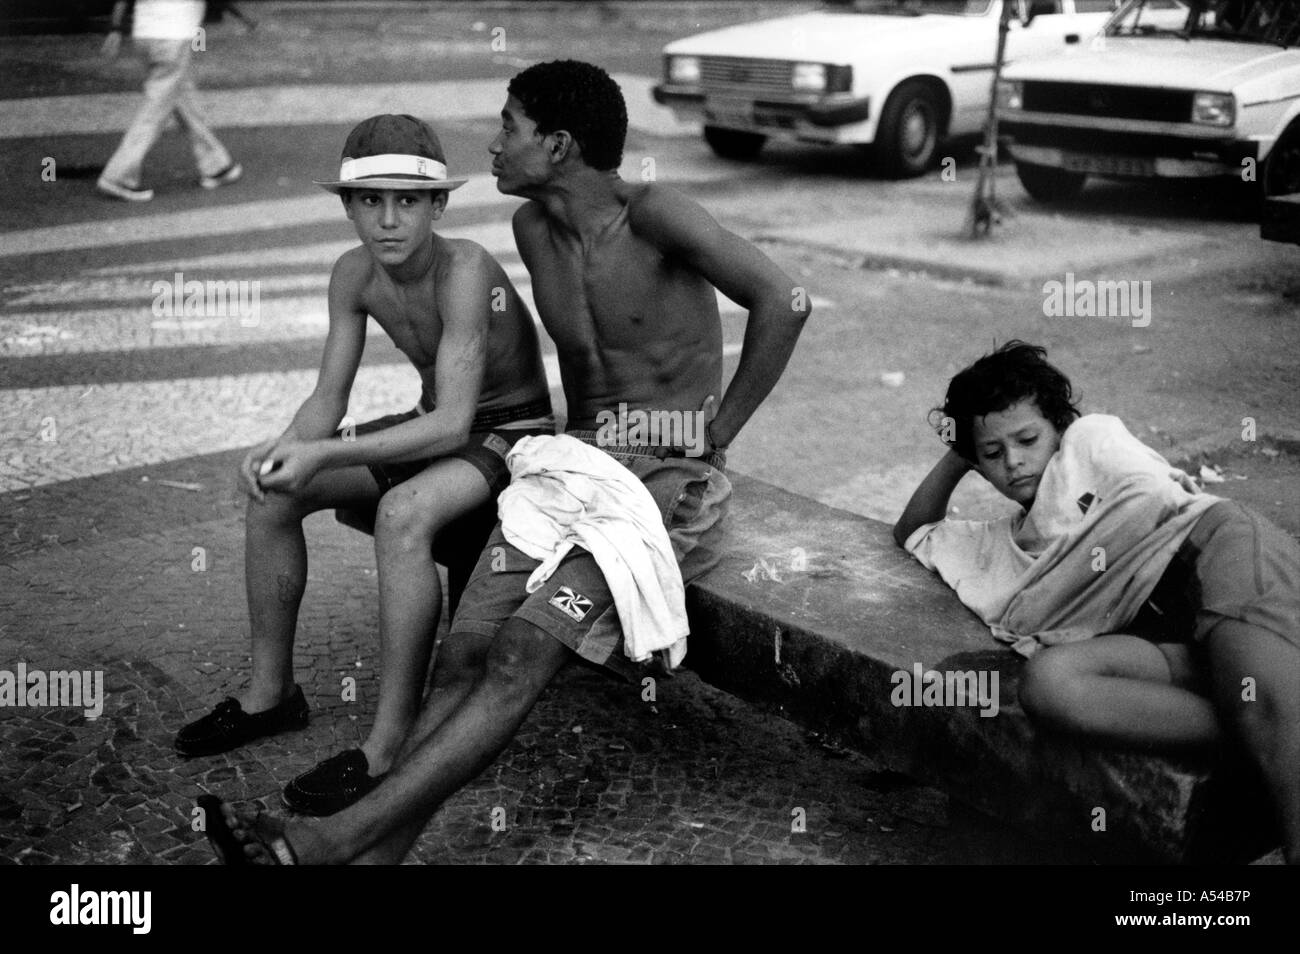 Painet hn1815 405 in bianco e nero di bambini di strada copacabana Rio Janeiro brasile paese nazione in via di sviluppo meno economicamente Foto Stock